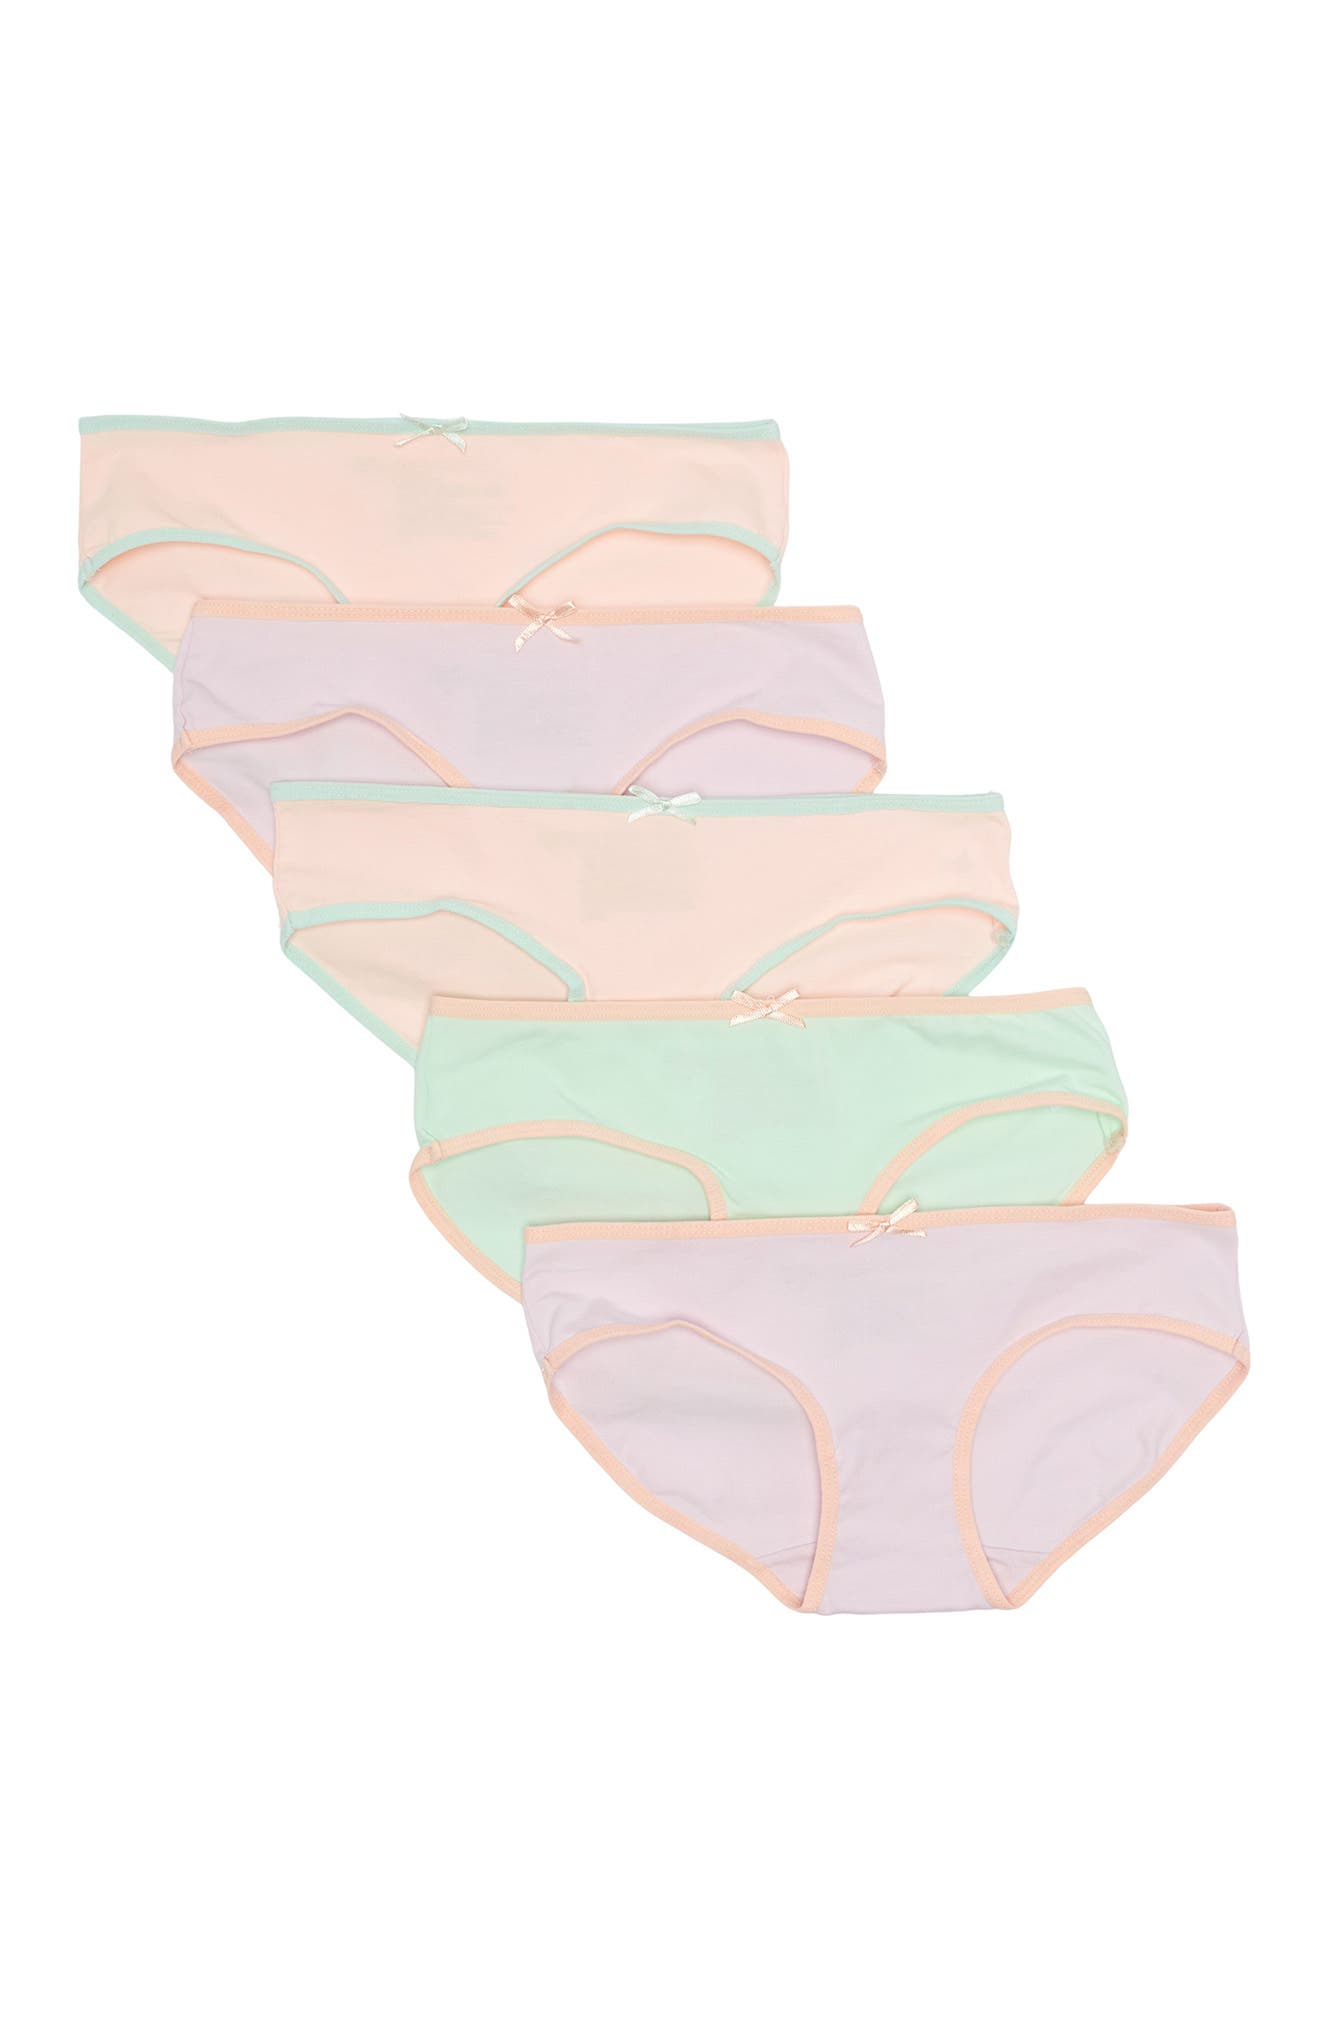 Nordstrom Rack Kids' Hipster Cut Panties In Pretty Pastel Pack